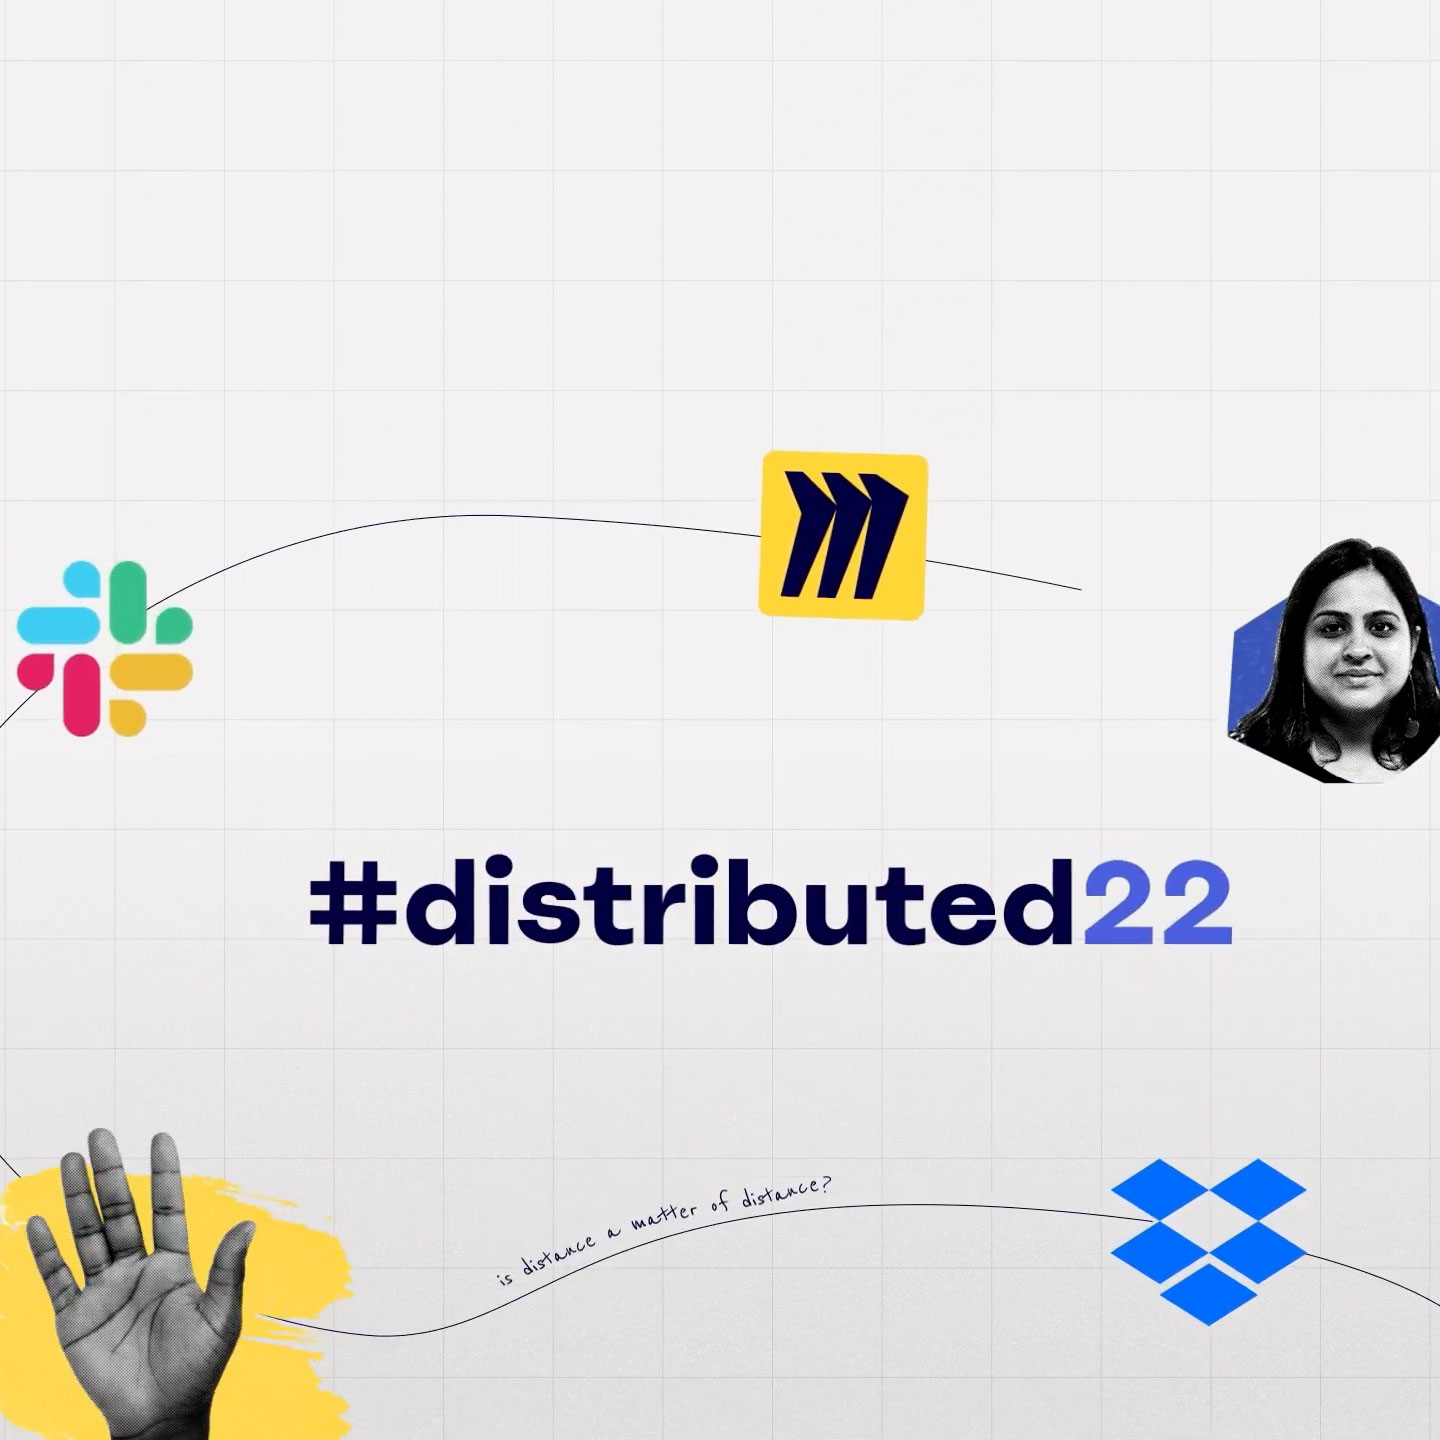 Titelkort från #distributed22-evenemanget med logotyperna för Miro, Slack och Dropbox